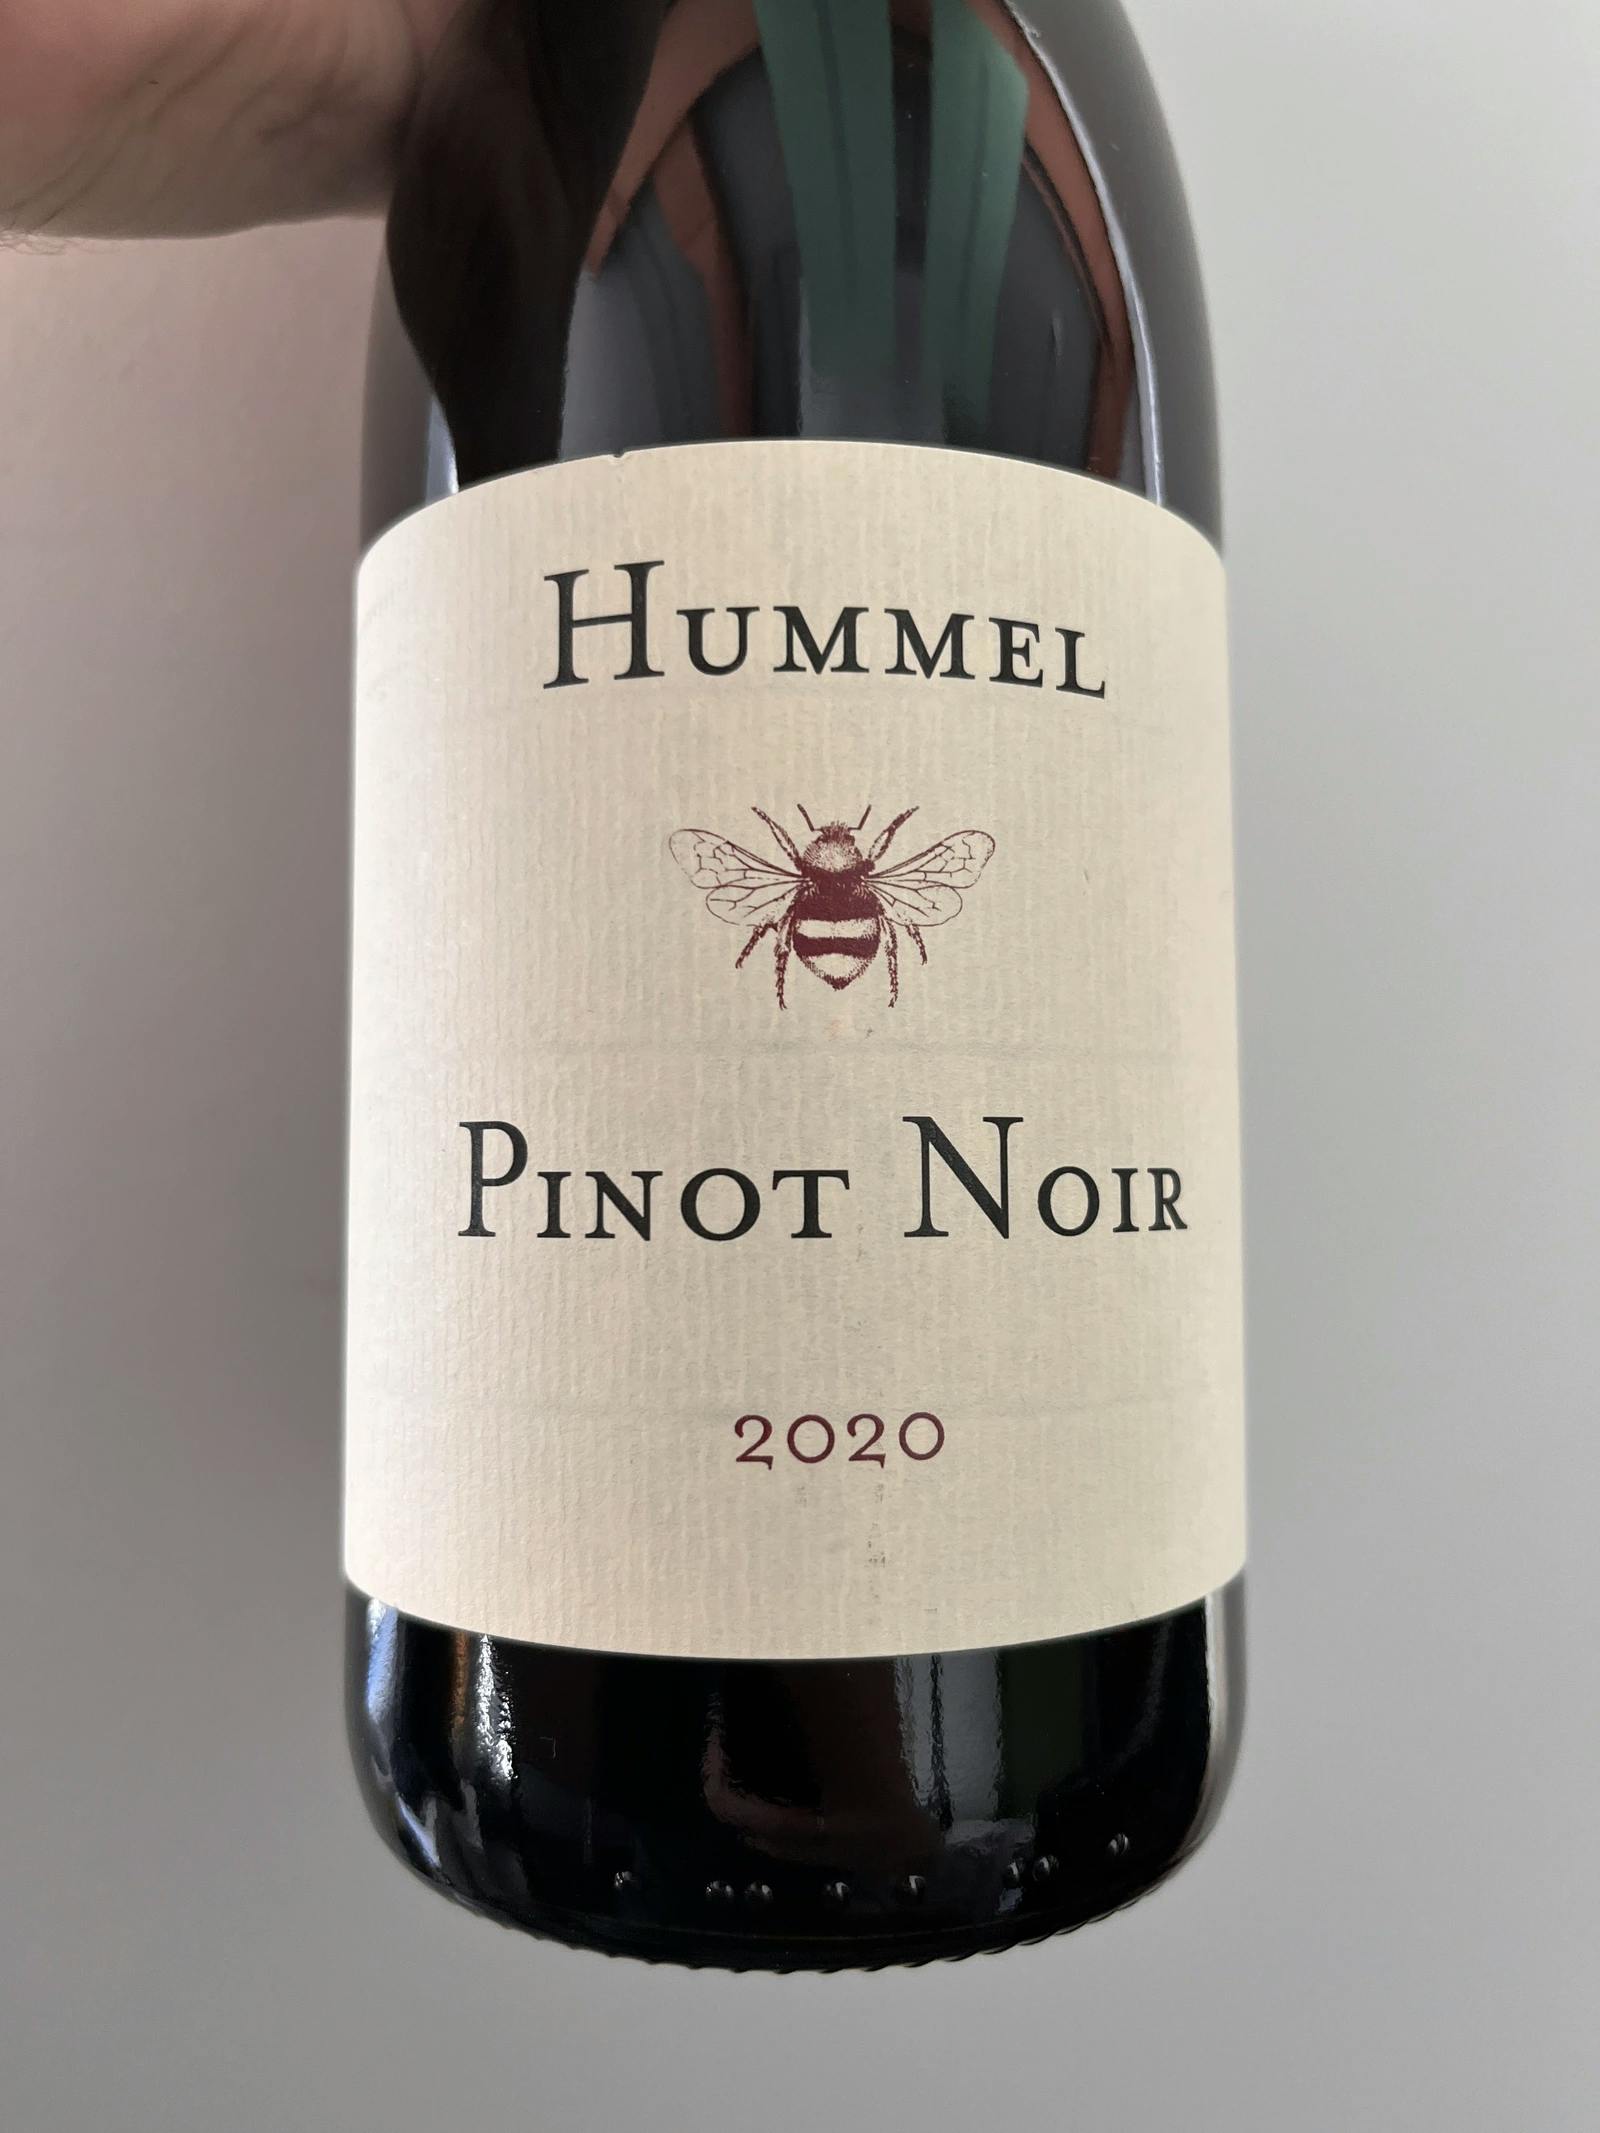 Hummel Pinot Noir 2020